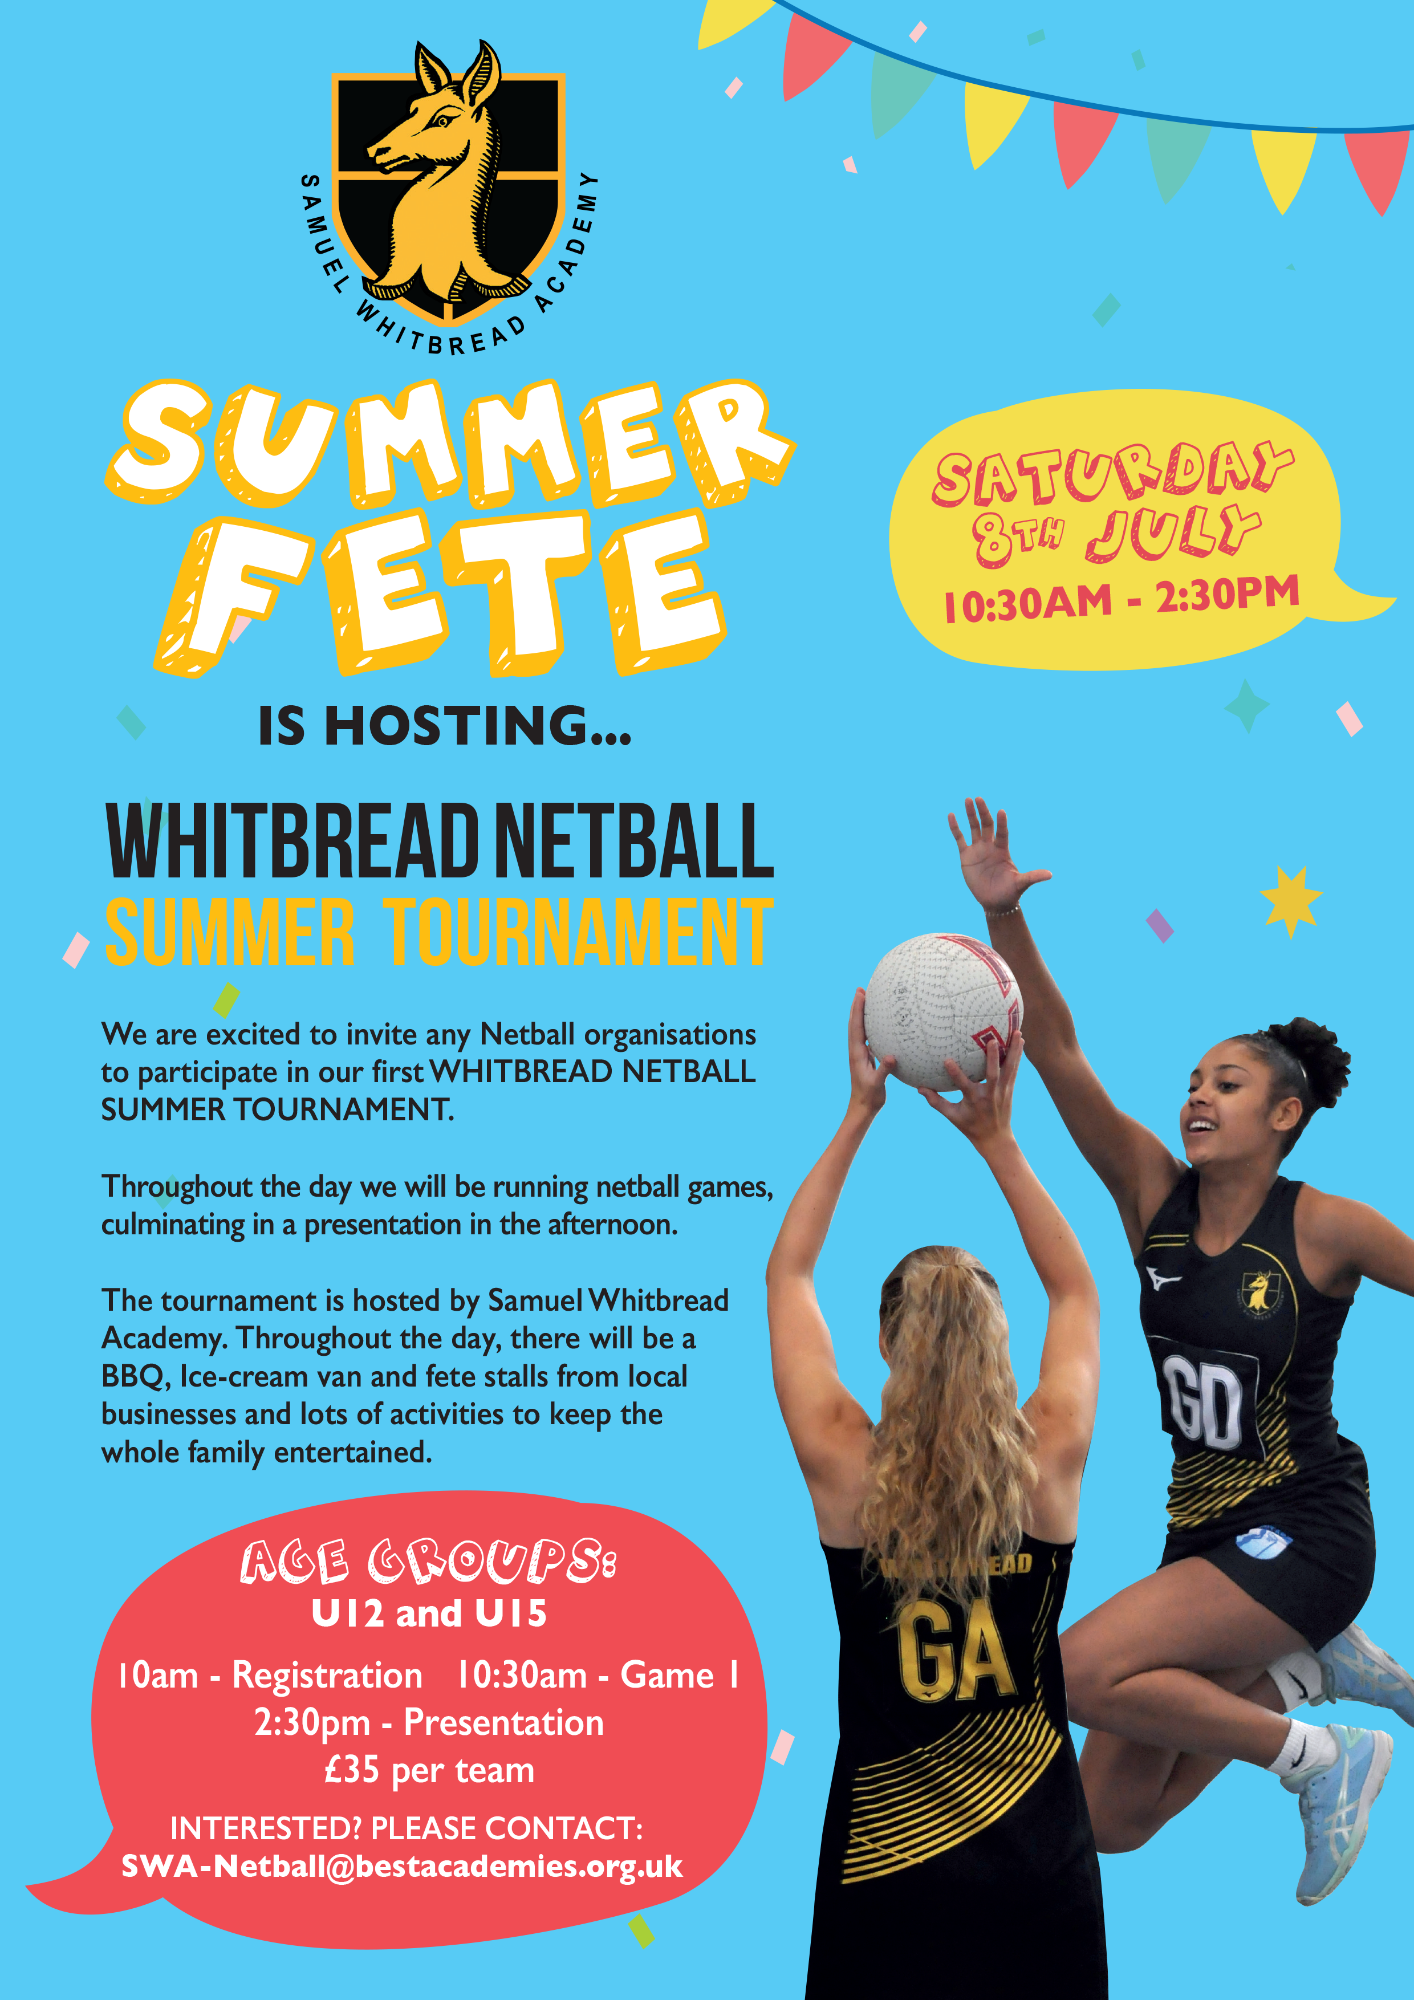 Summer fete, whitbread netball summer tournament poster 